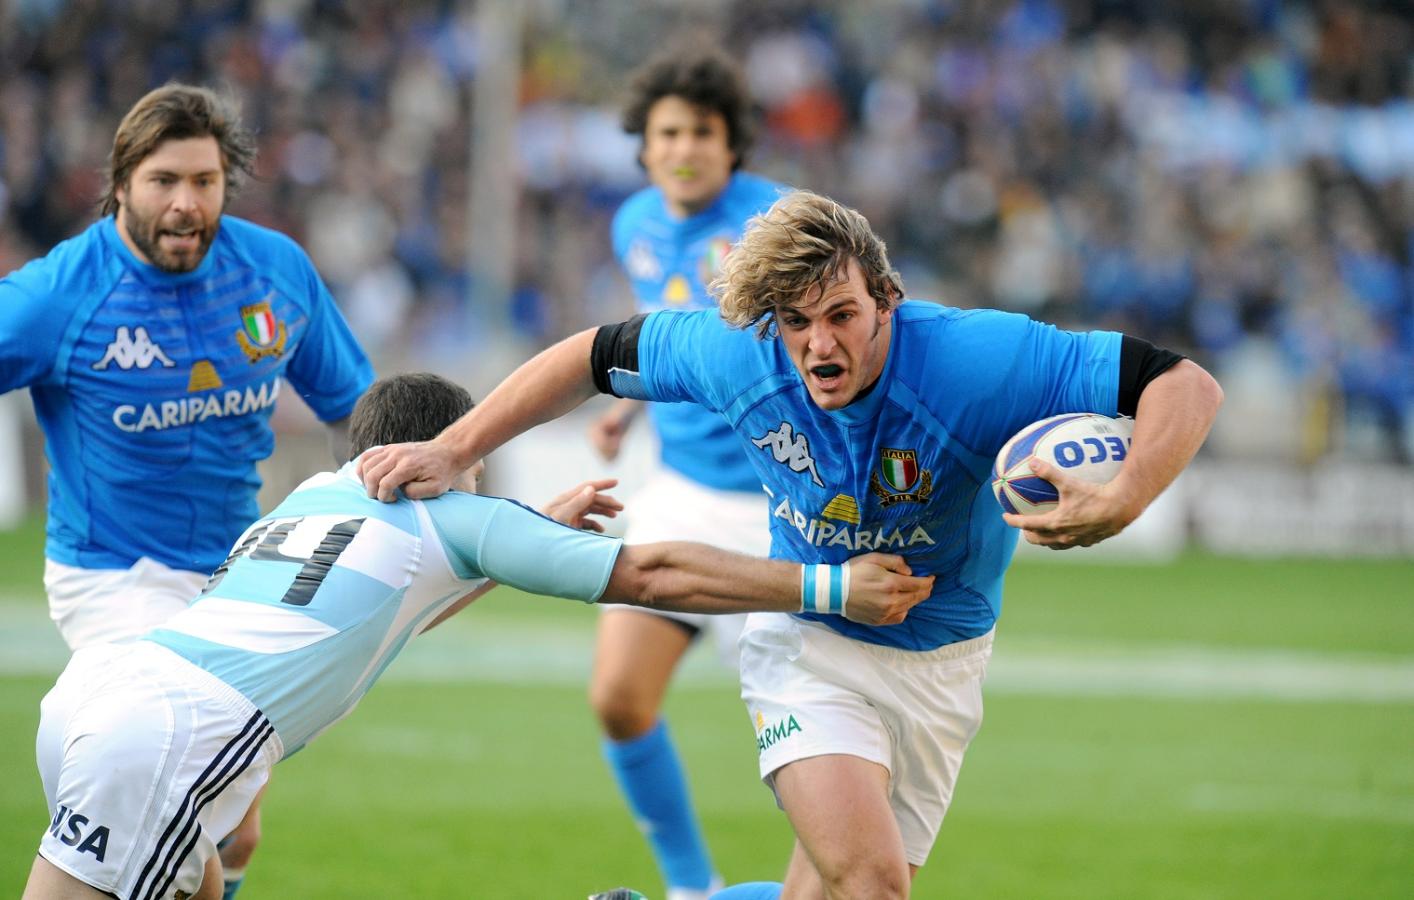 Guarda il rugby italiano all'estero